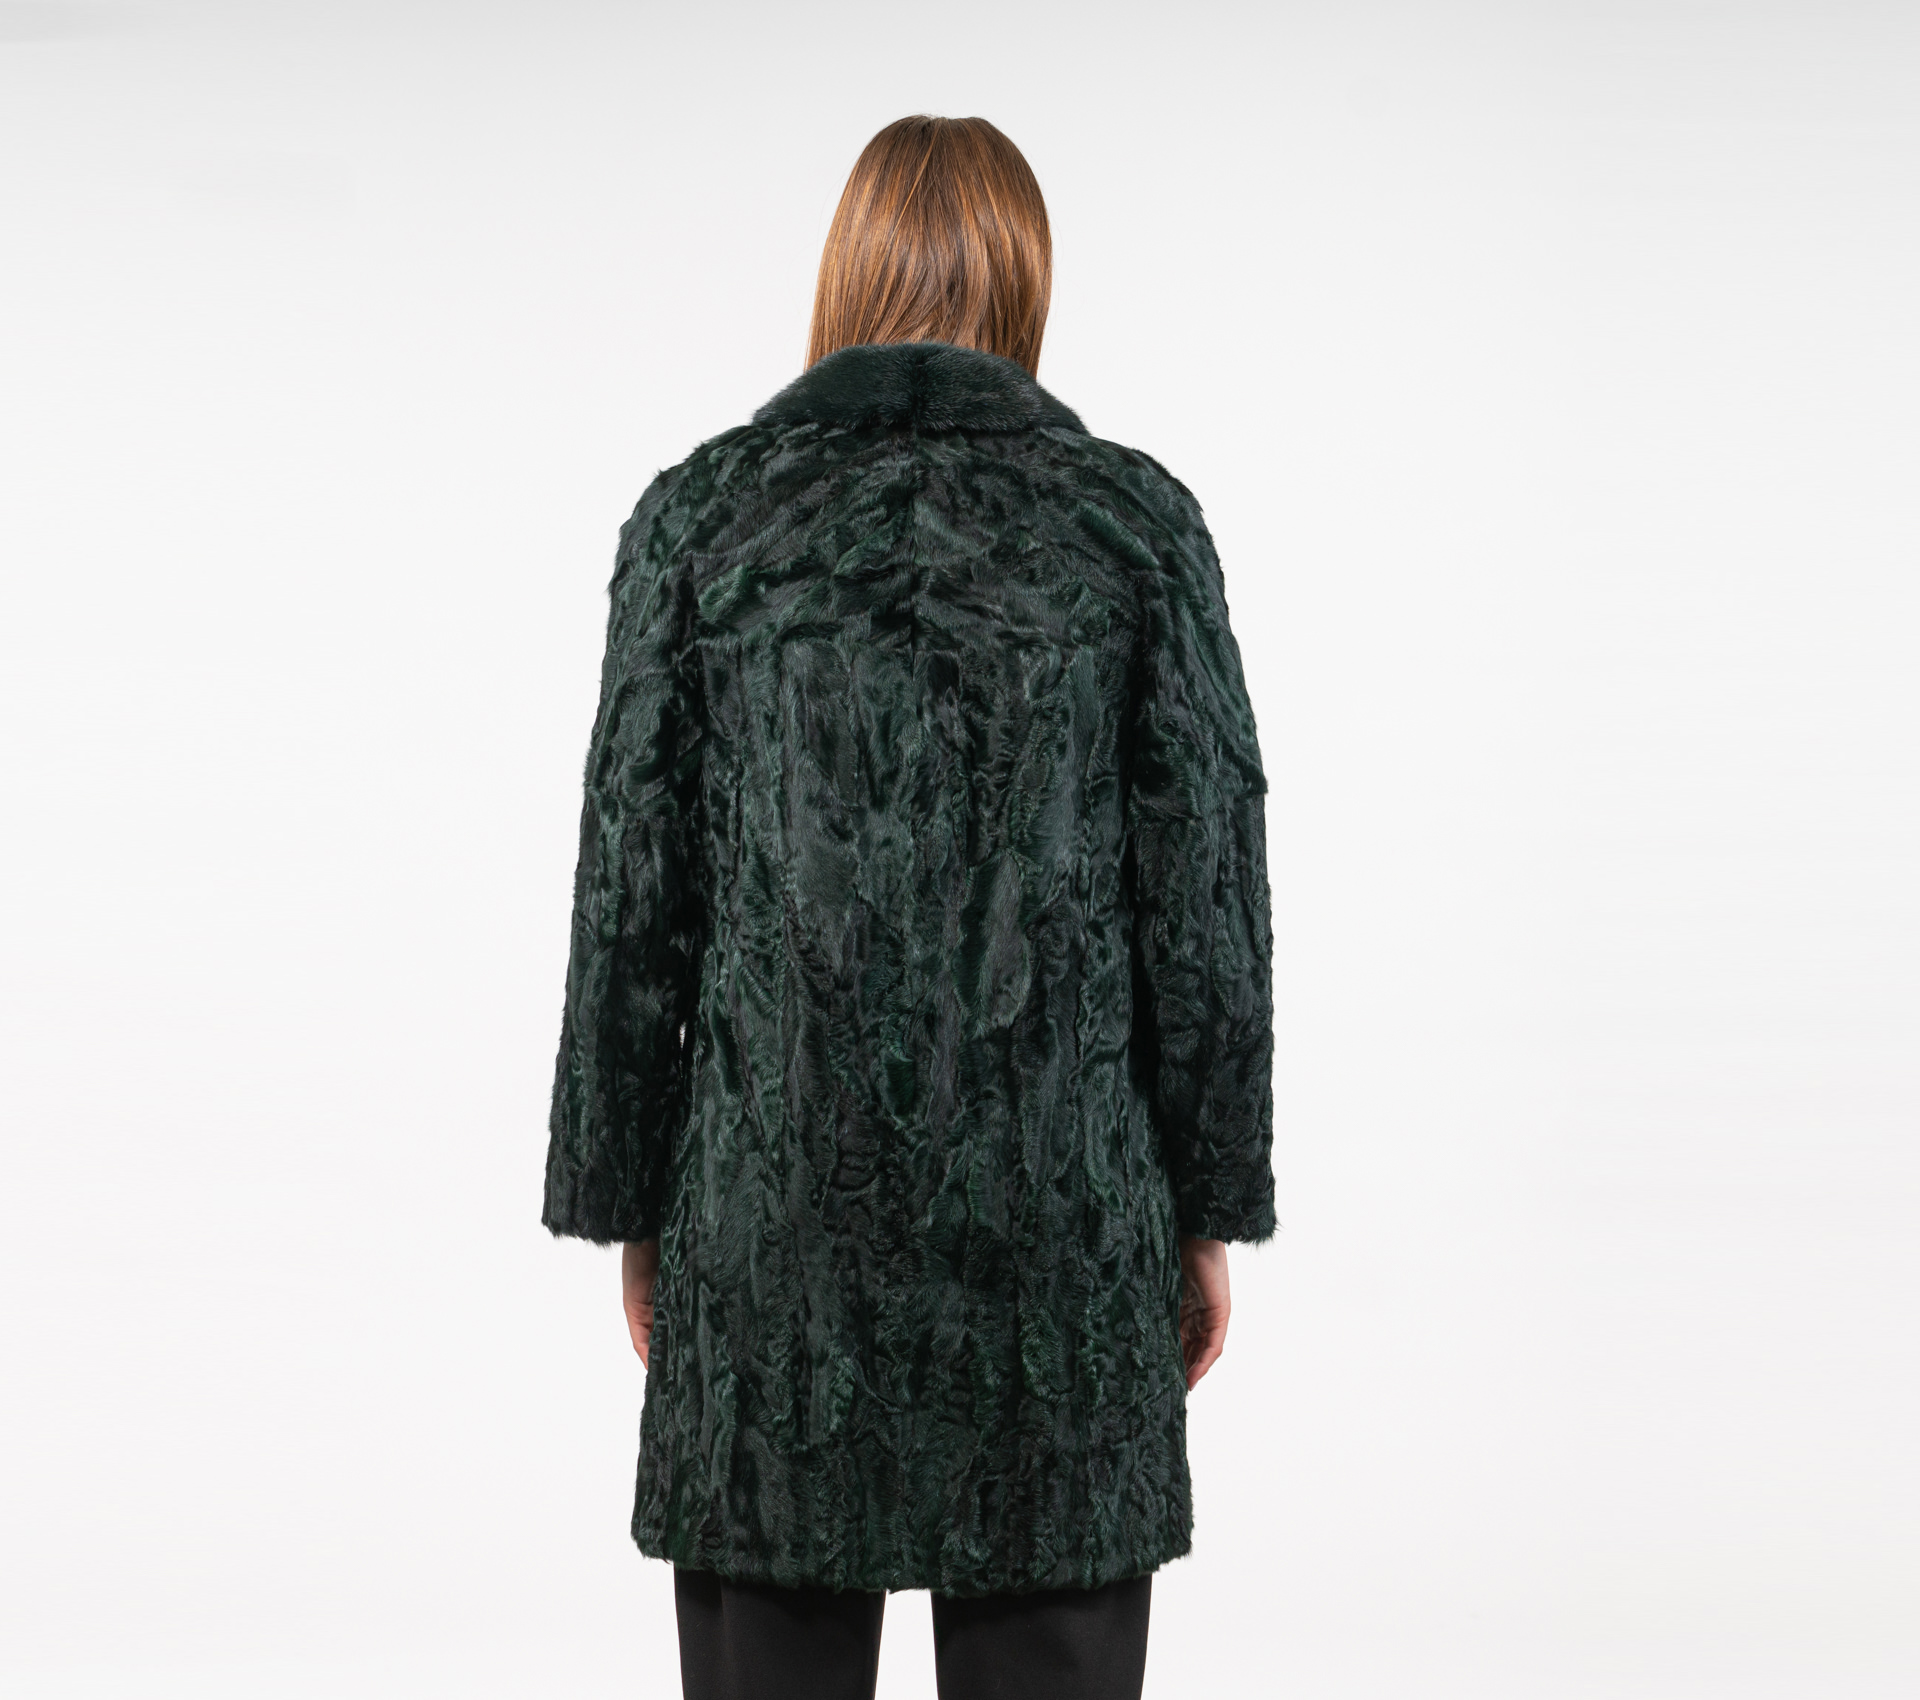 Cypress Green Astrakhan Fur Jacket - 100% Real Fur Coats - Haute Acorn